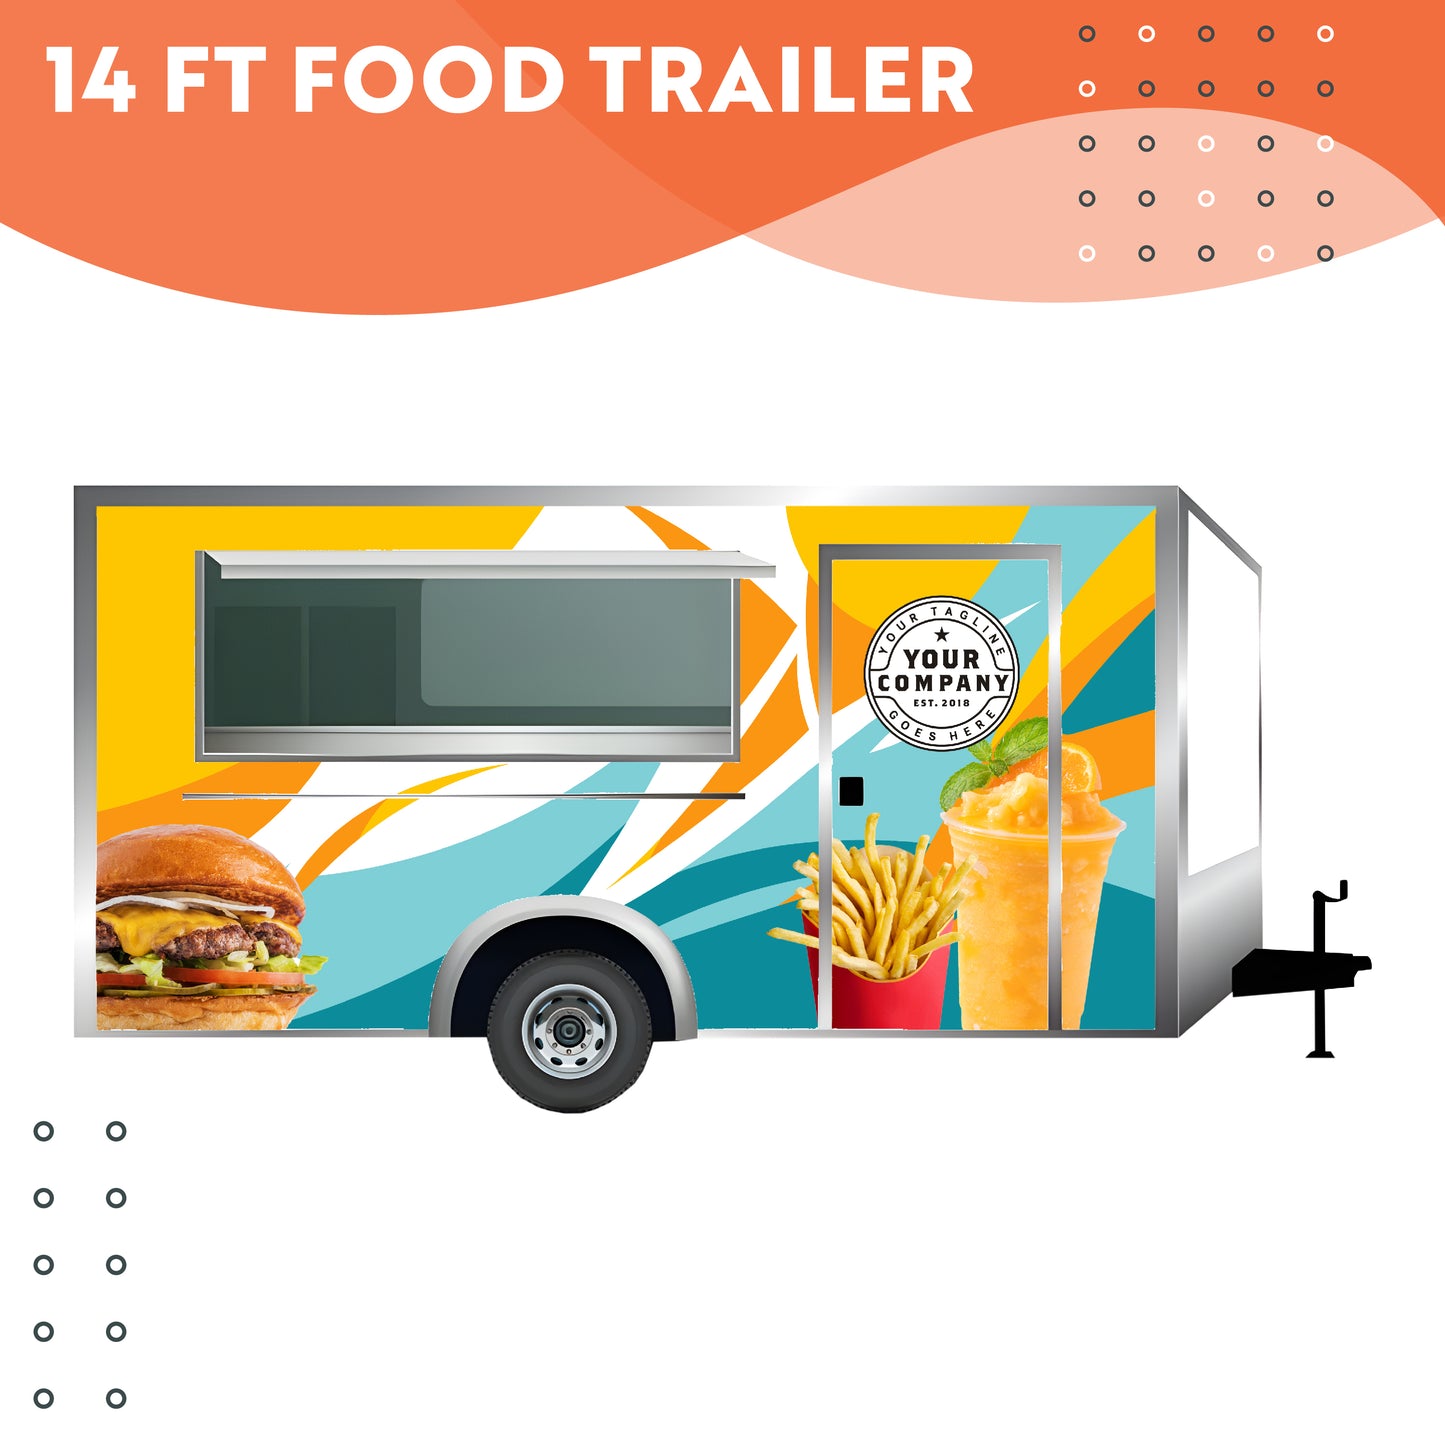 14 ft Food Trailer